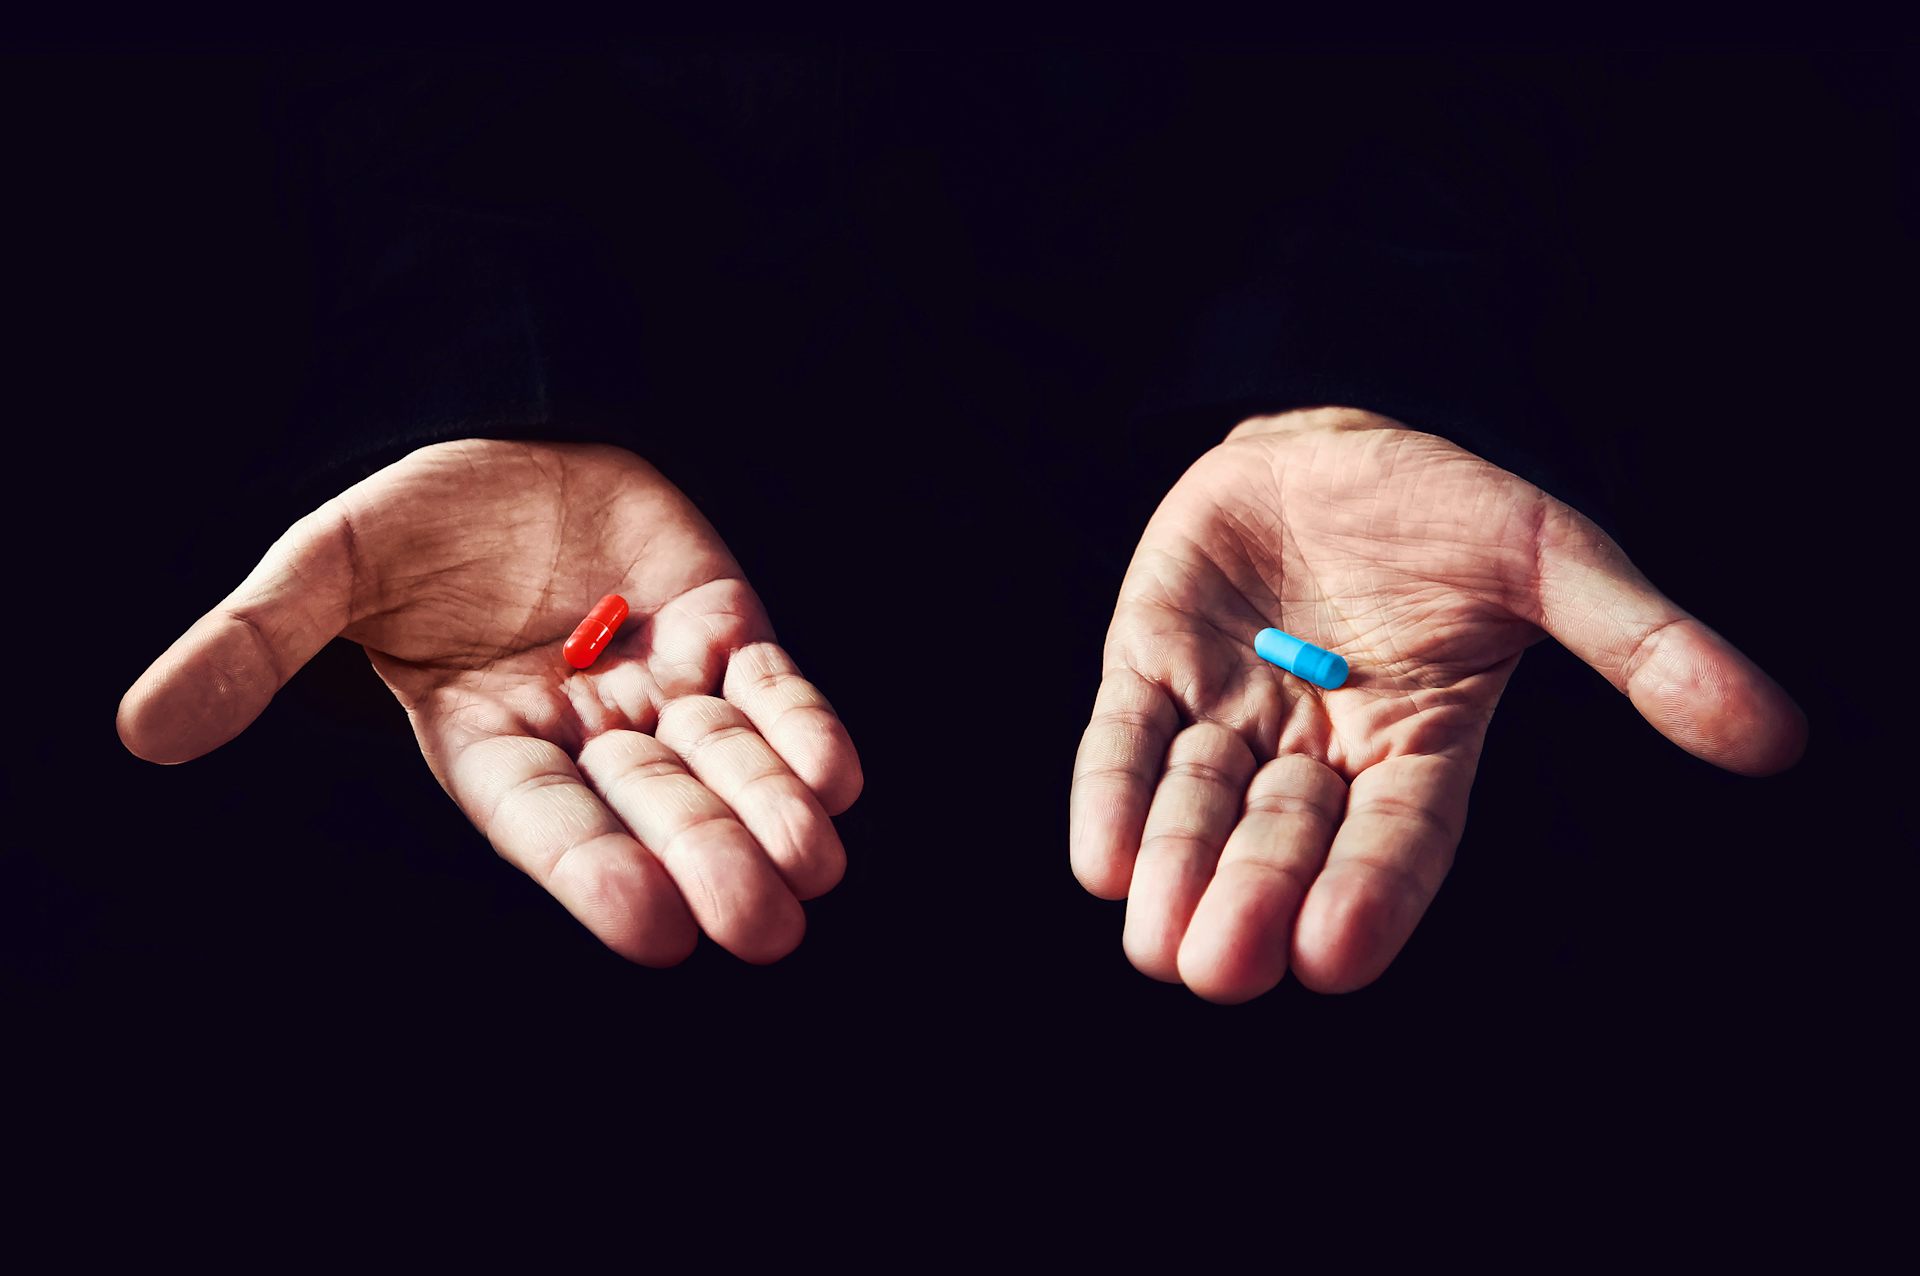 matrix blue pill red pill hands